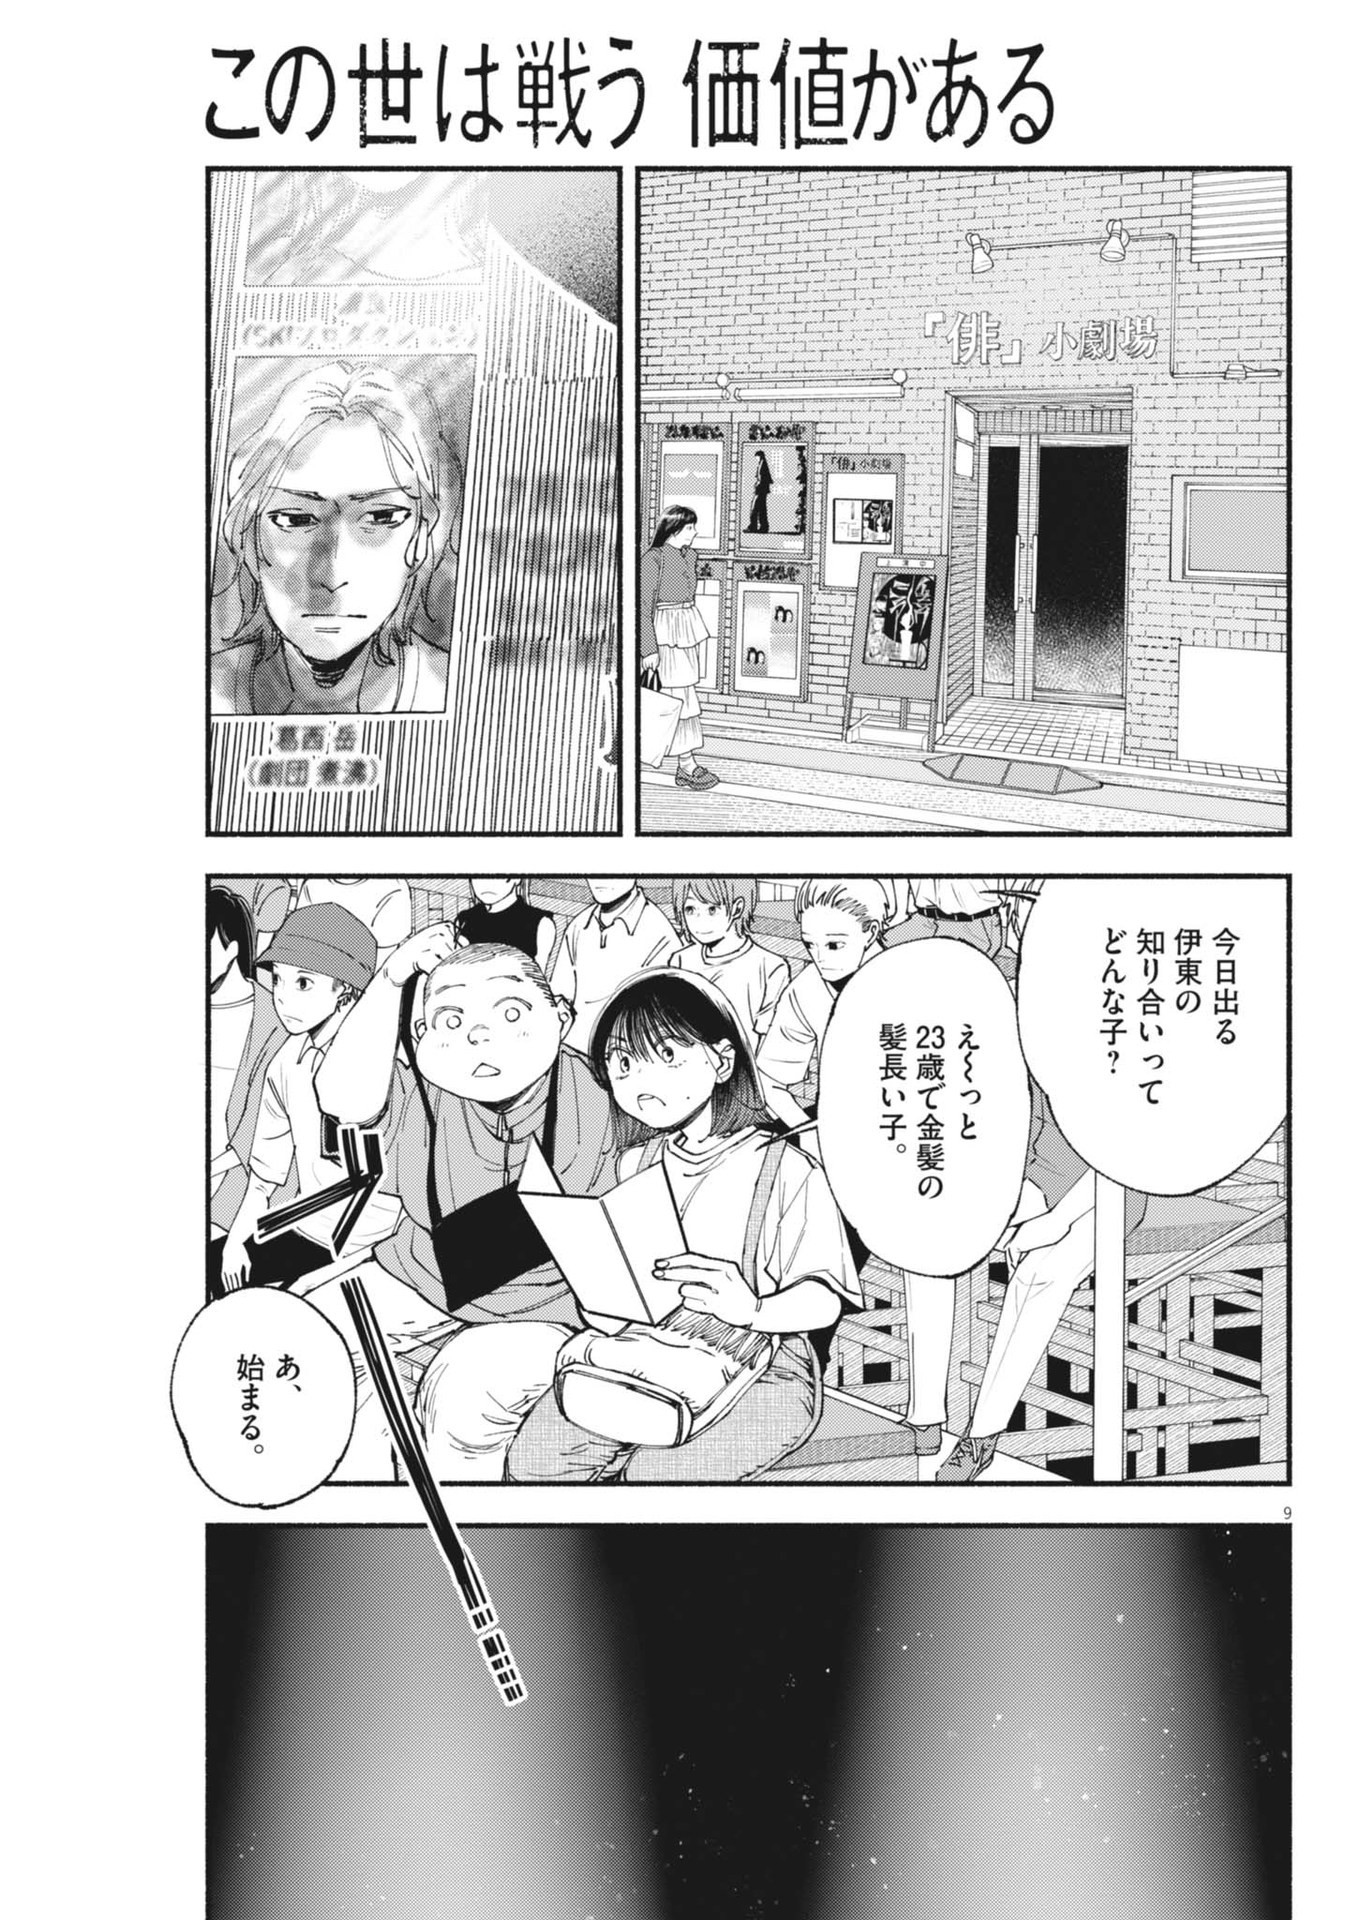 Konoyo wa Tatakau Kachi ga Aru  - Chapter 27 - Page 9